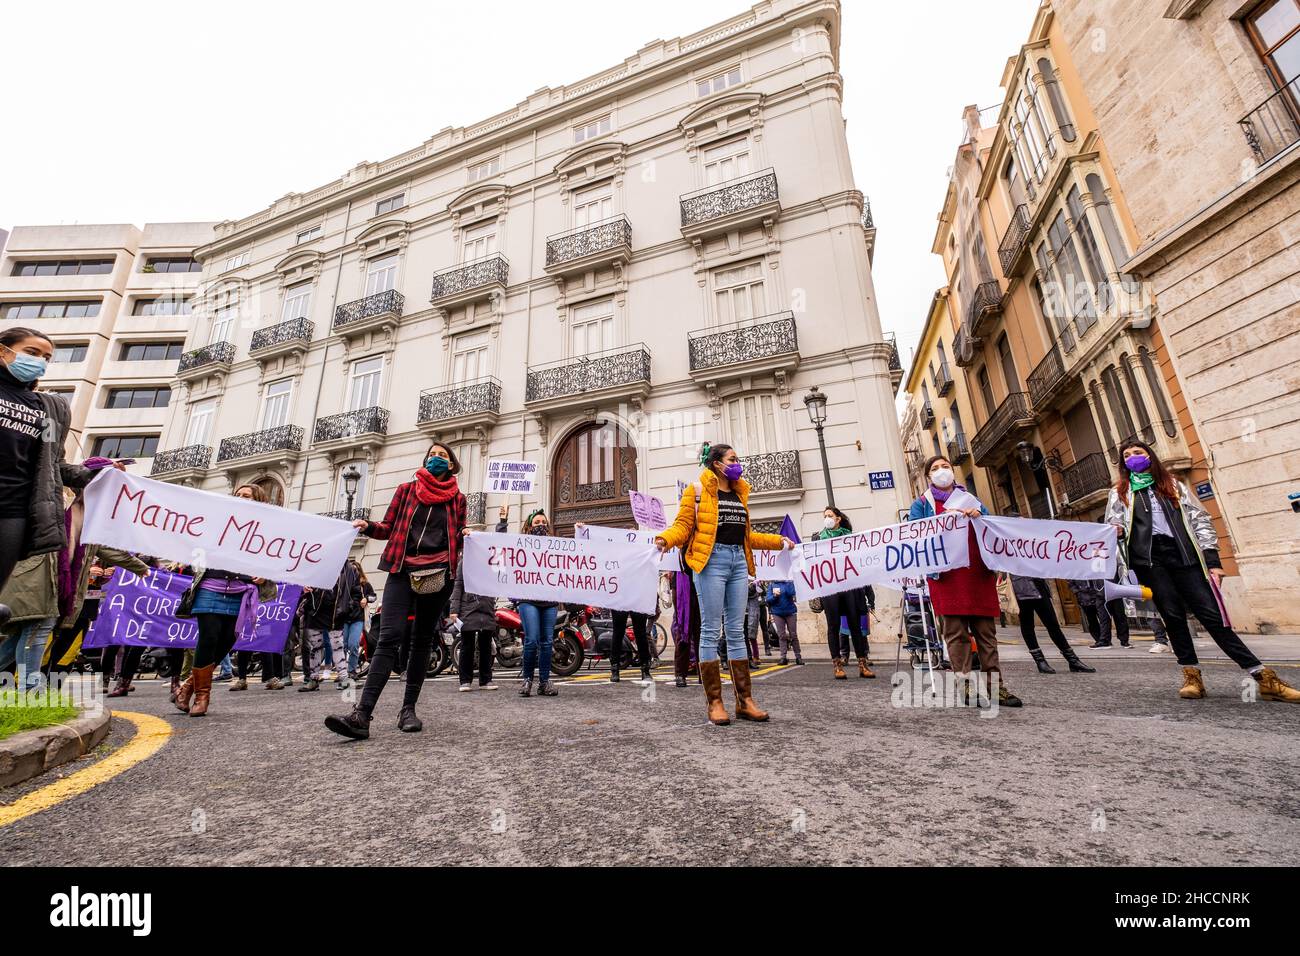 Valencia, Spanien; 8th. März 2021: Feministische Kundgebungen zum Frauentag am 8. März 2021. Stockfoto